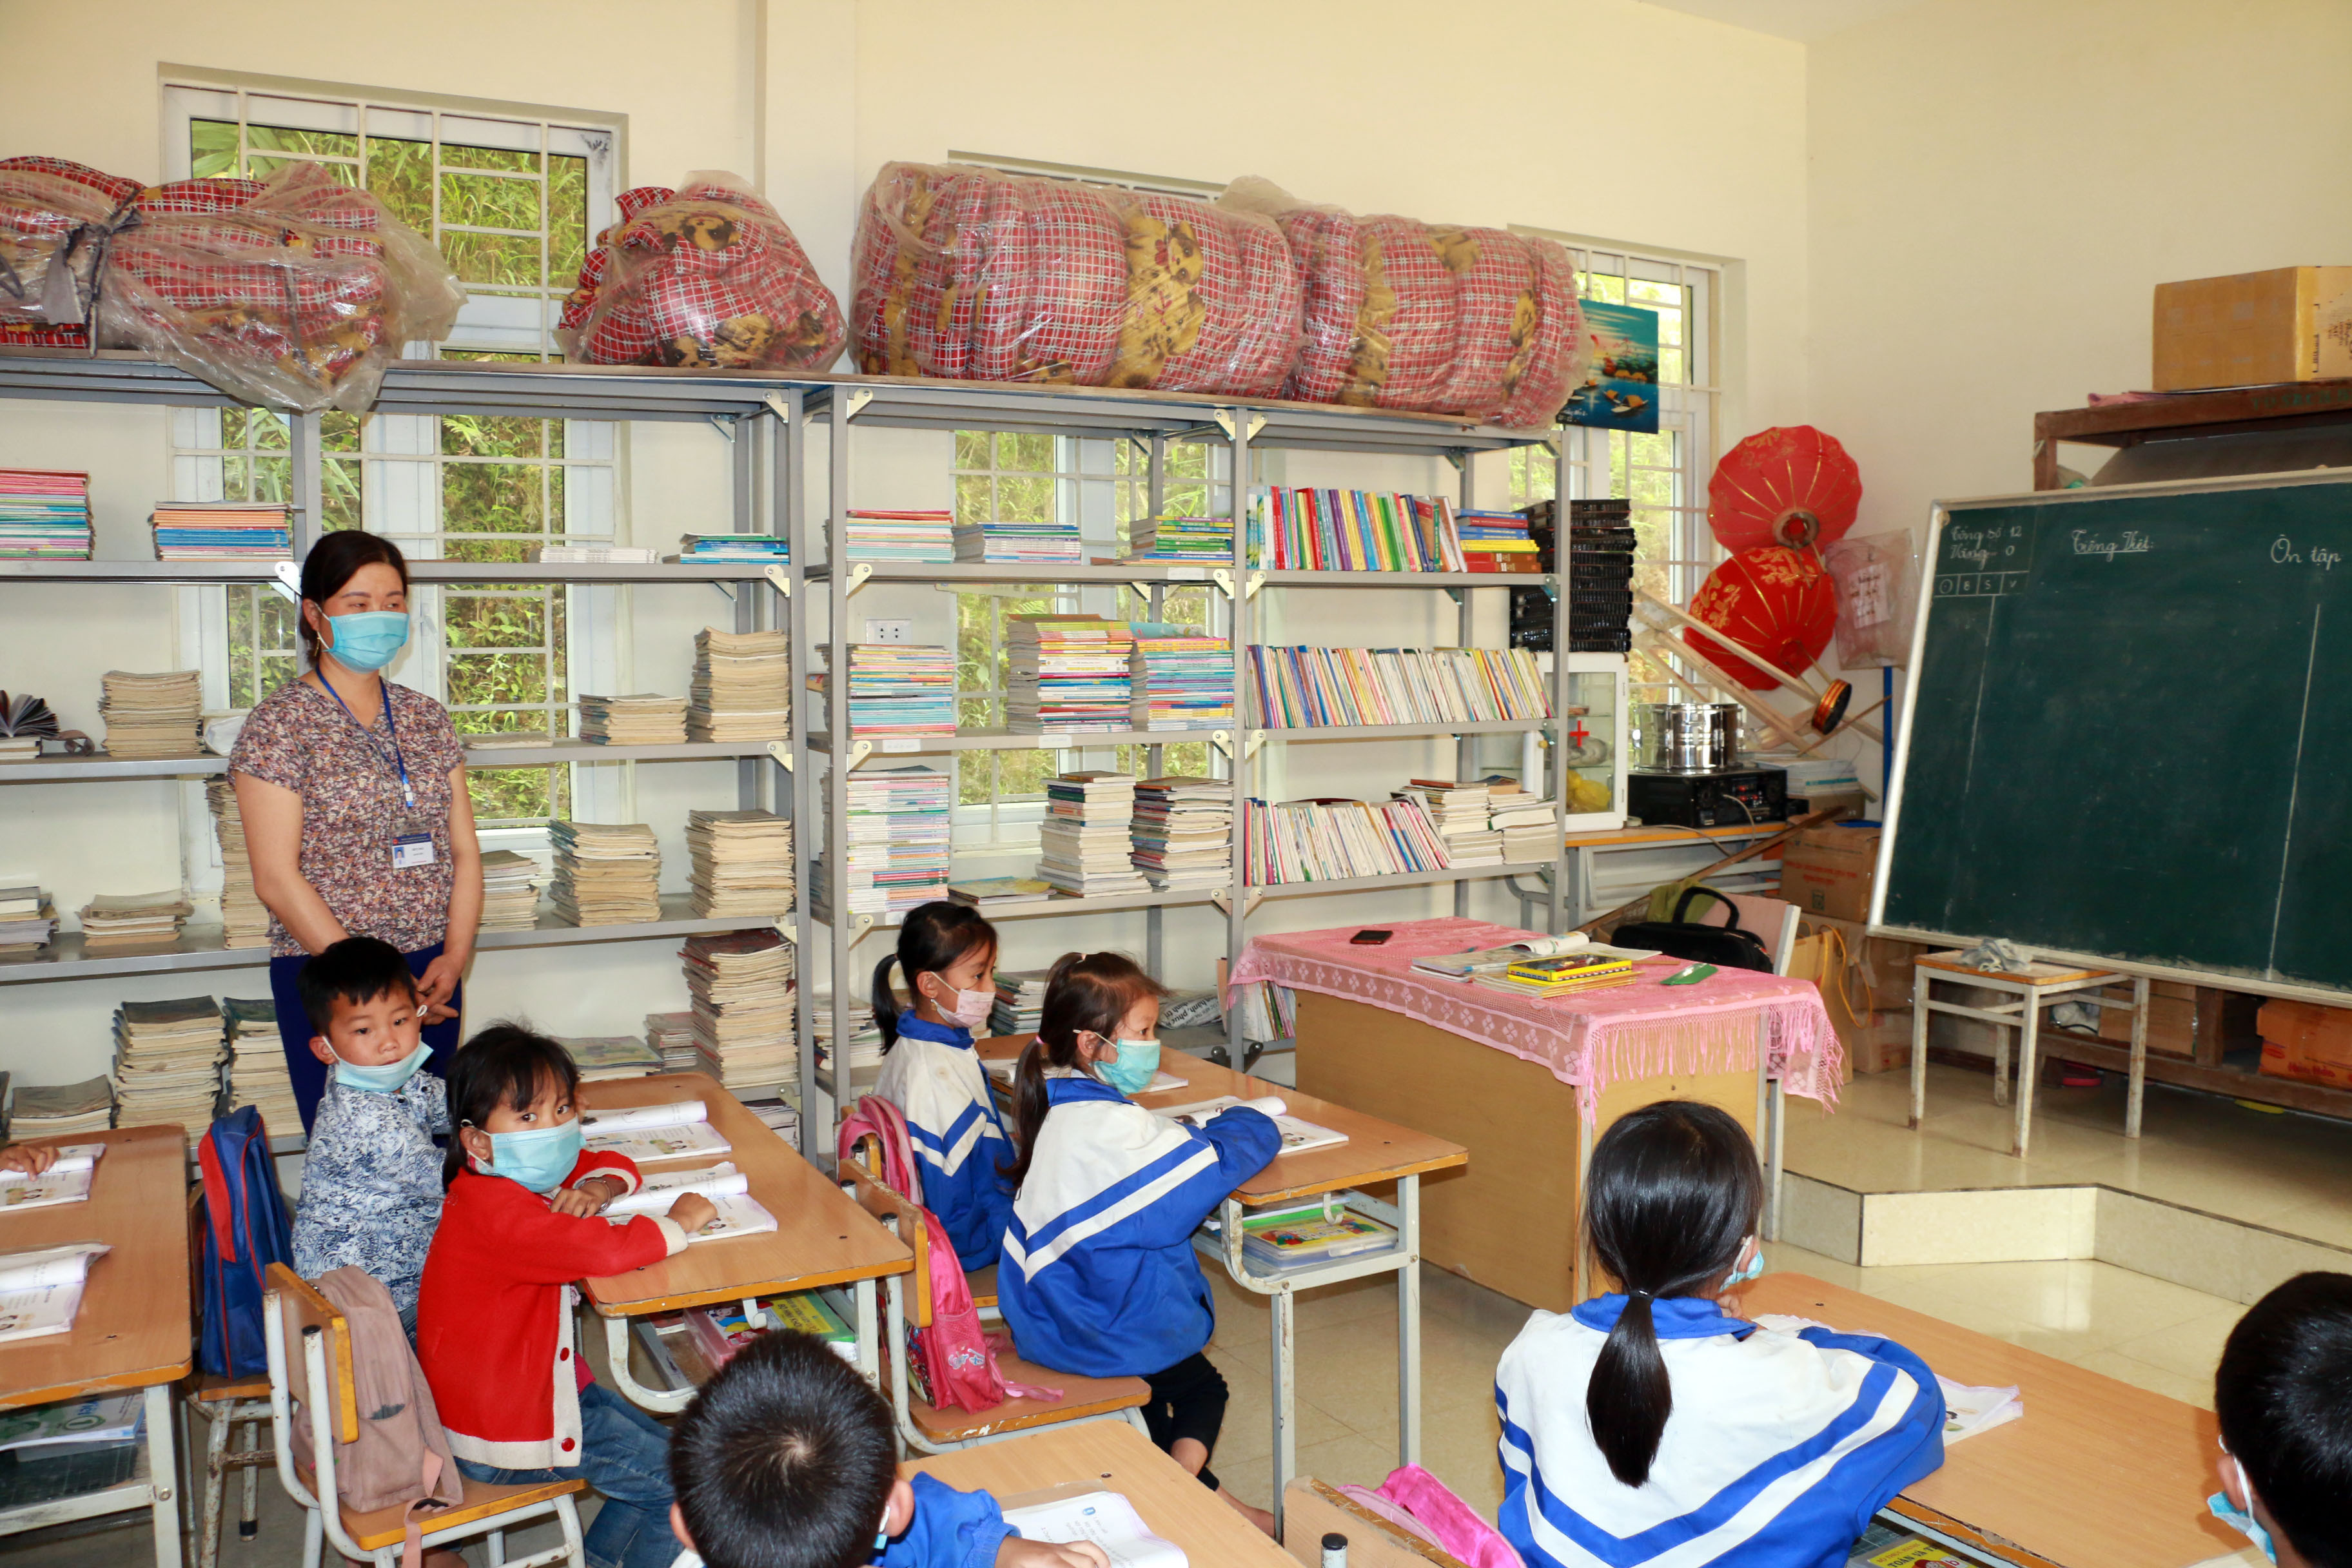 Tại Trường Tiểu học Mường Típ 2 (Kỳ Sơn) vì thiếu phòng ở nên nhà trường phải tận dụng phòng học để làm phòng ngủ cho học học sinh. Ảnh: MH